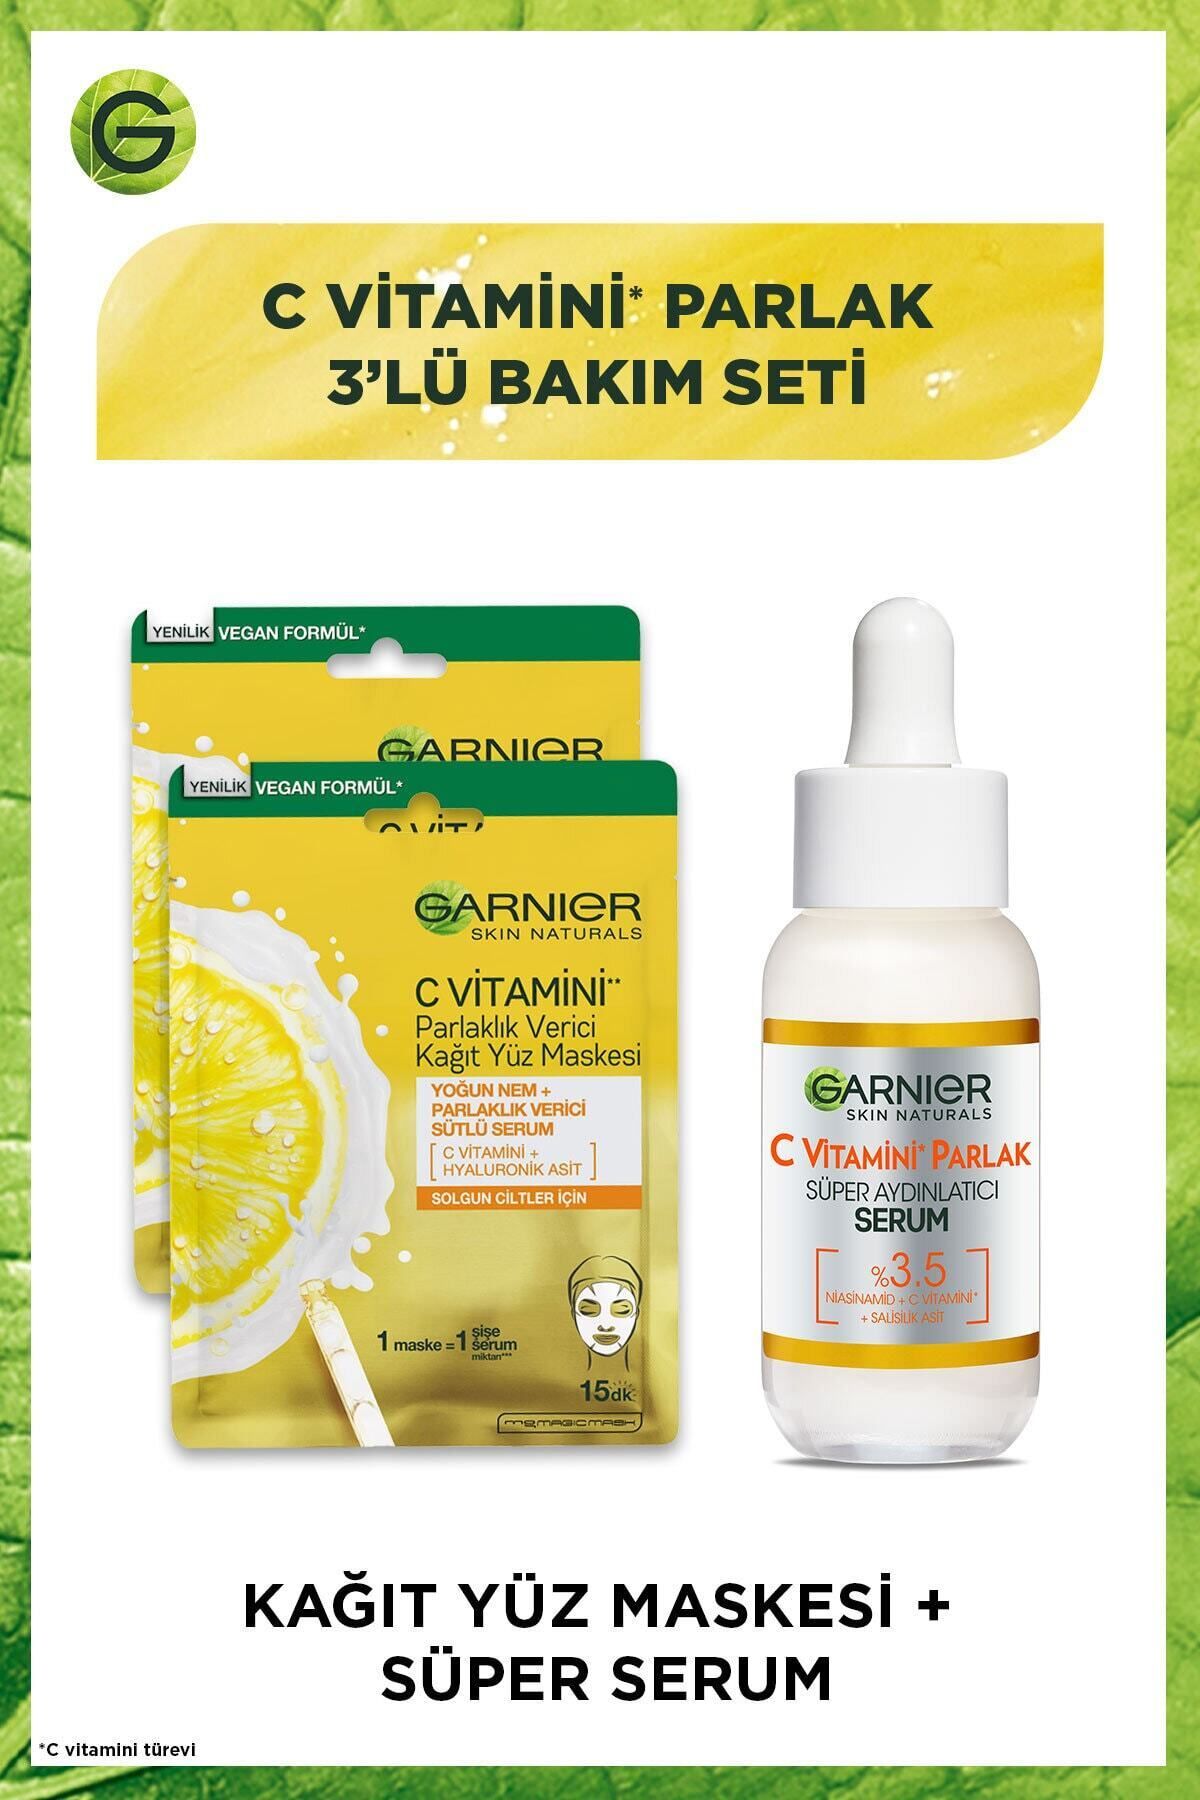 Garnier C Vitamini Parlak 3'lü Bakım Seti Kağıt Yüz Maskesi + Süper Aydınlatıcı Serum